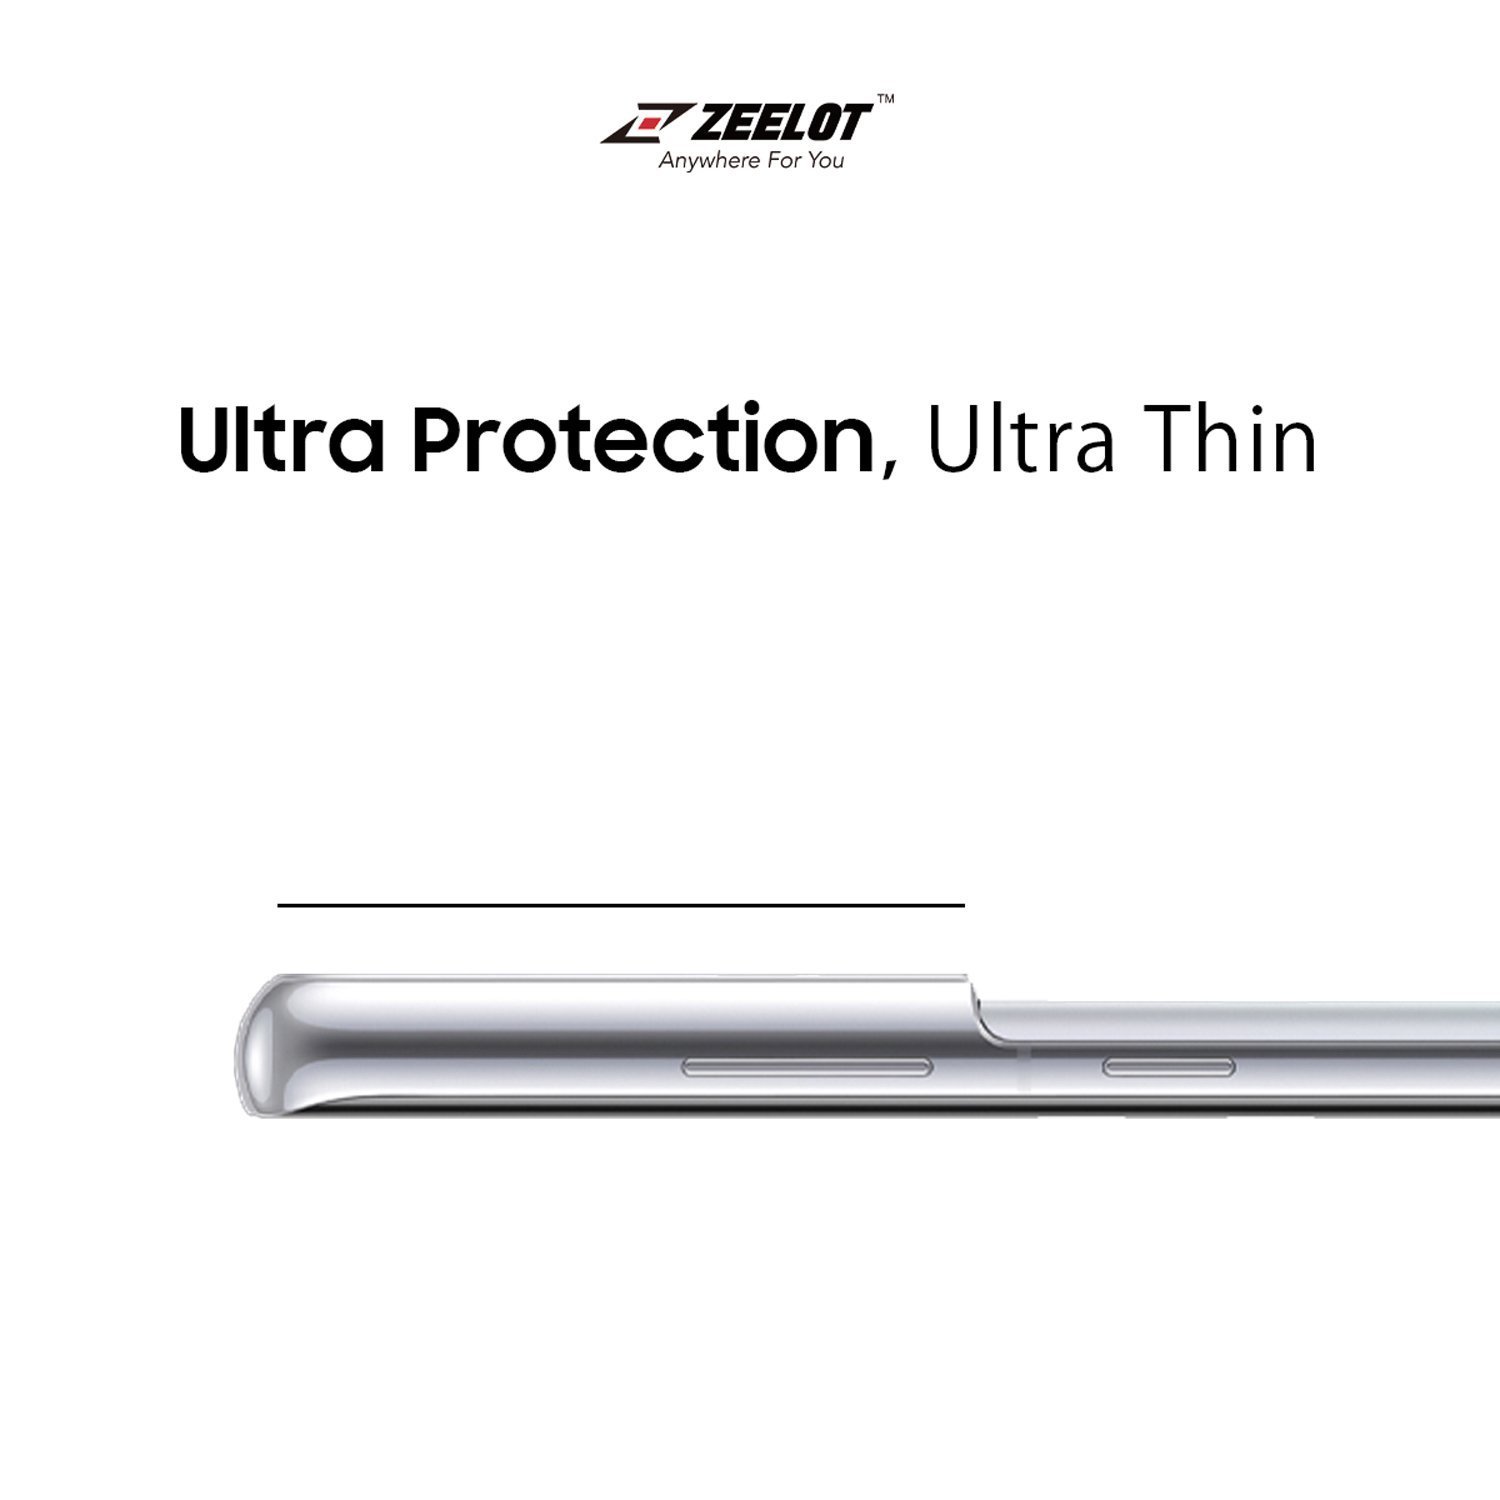 ZEELOT Samsung Galaxy S21 Ultra Lens Protector, Black S21 ZEELOT 